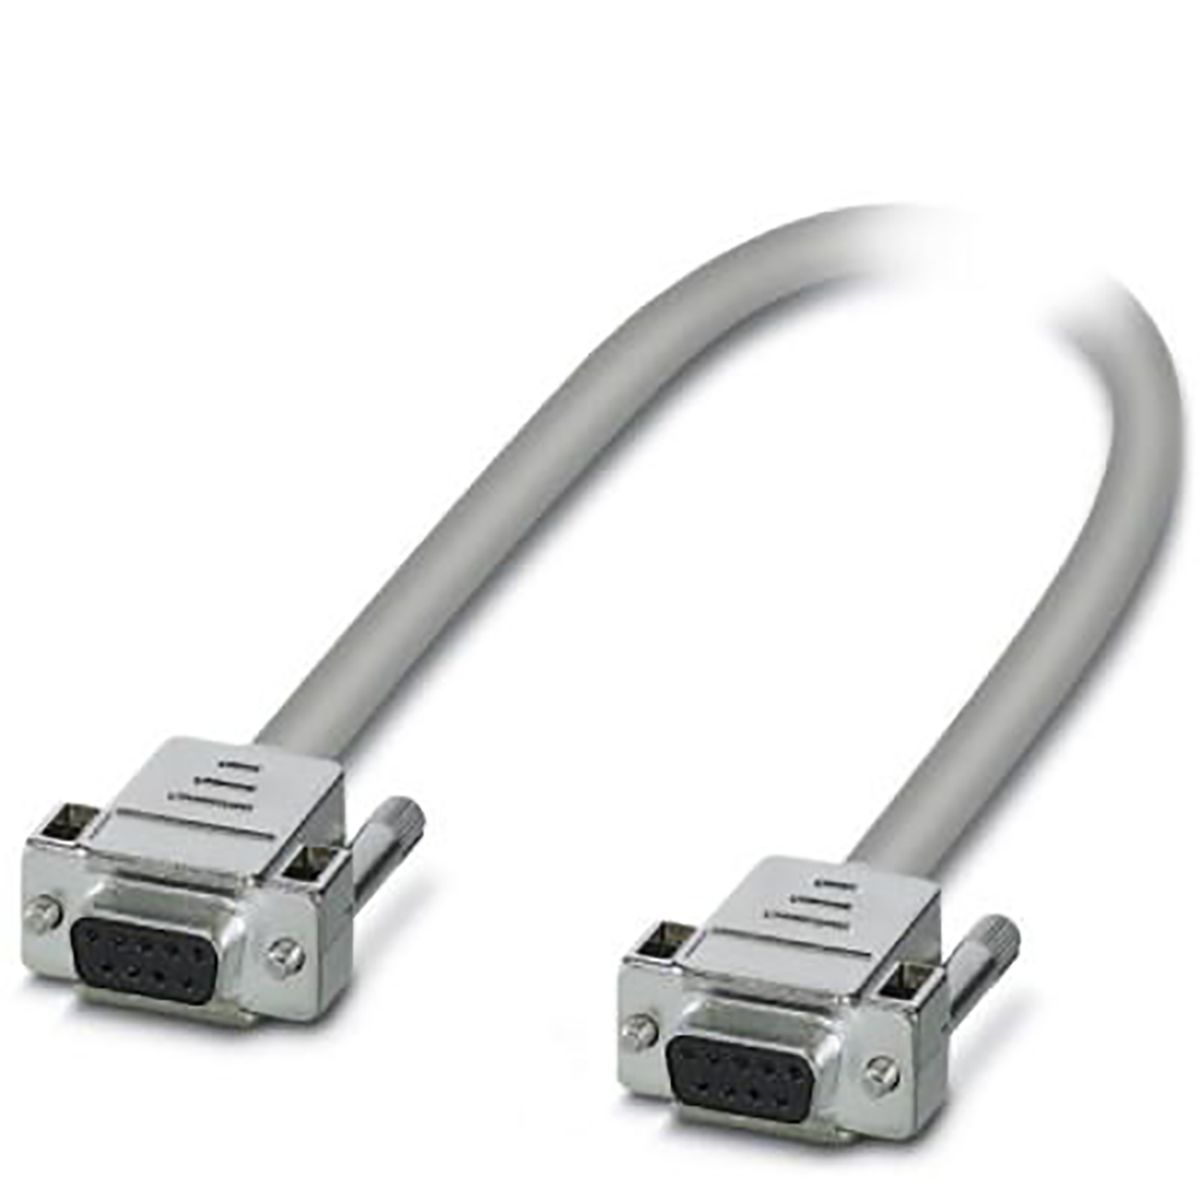 Sériový kabel délka 1m, A: 9 kolík D-SUB, B: 9 kolík D-SUB